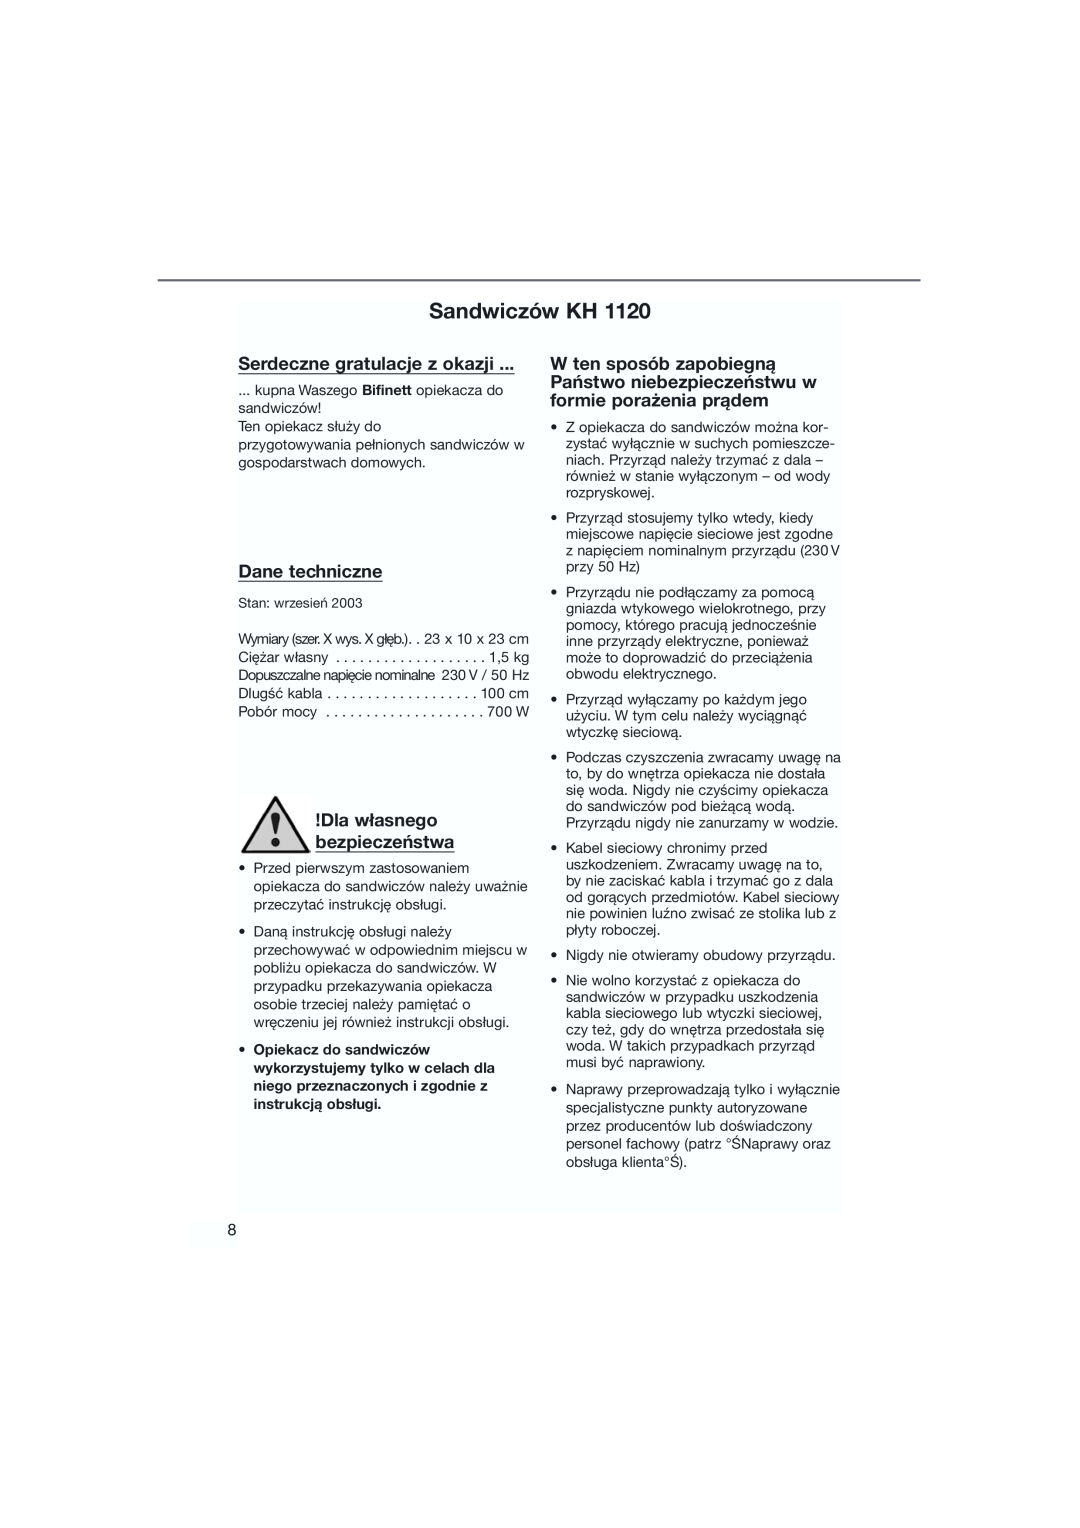 Bifinett KH 1120 manual Sandwiczów KH, Serdeczne gratulacje z okazji, Dane techniczne, Dla własnego bezpieczeństwa 